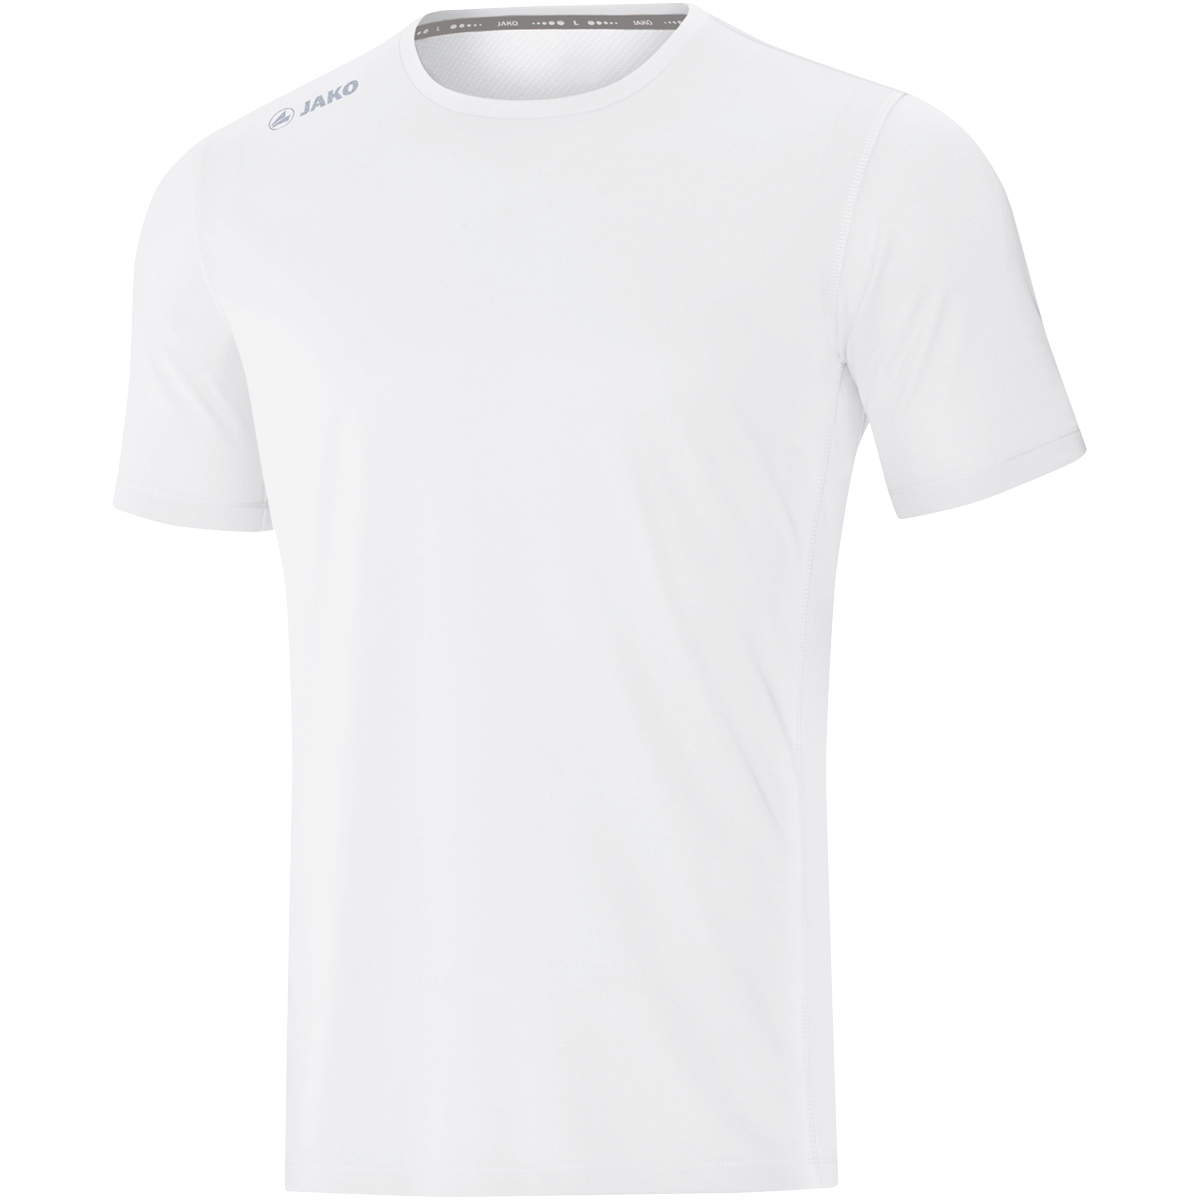 Jako Runningshirt T-Shirt Herren Laufshirt Funktionsshirt Sport grau 6175 